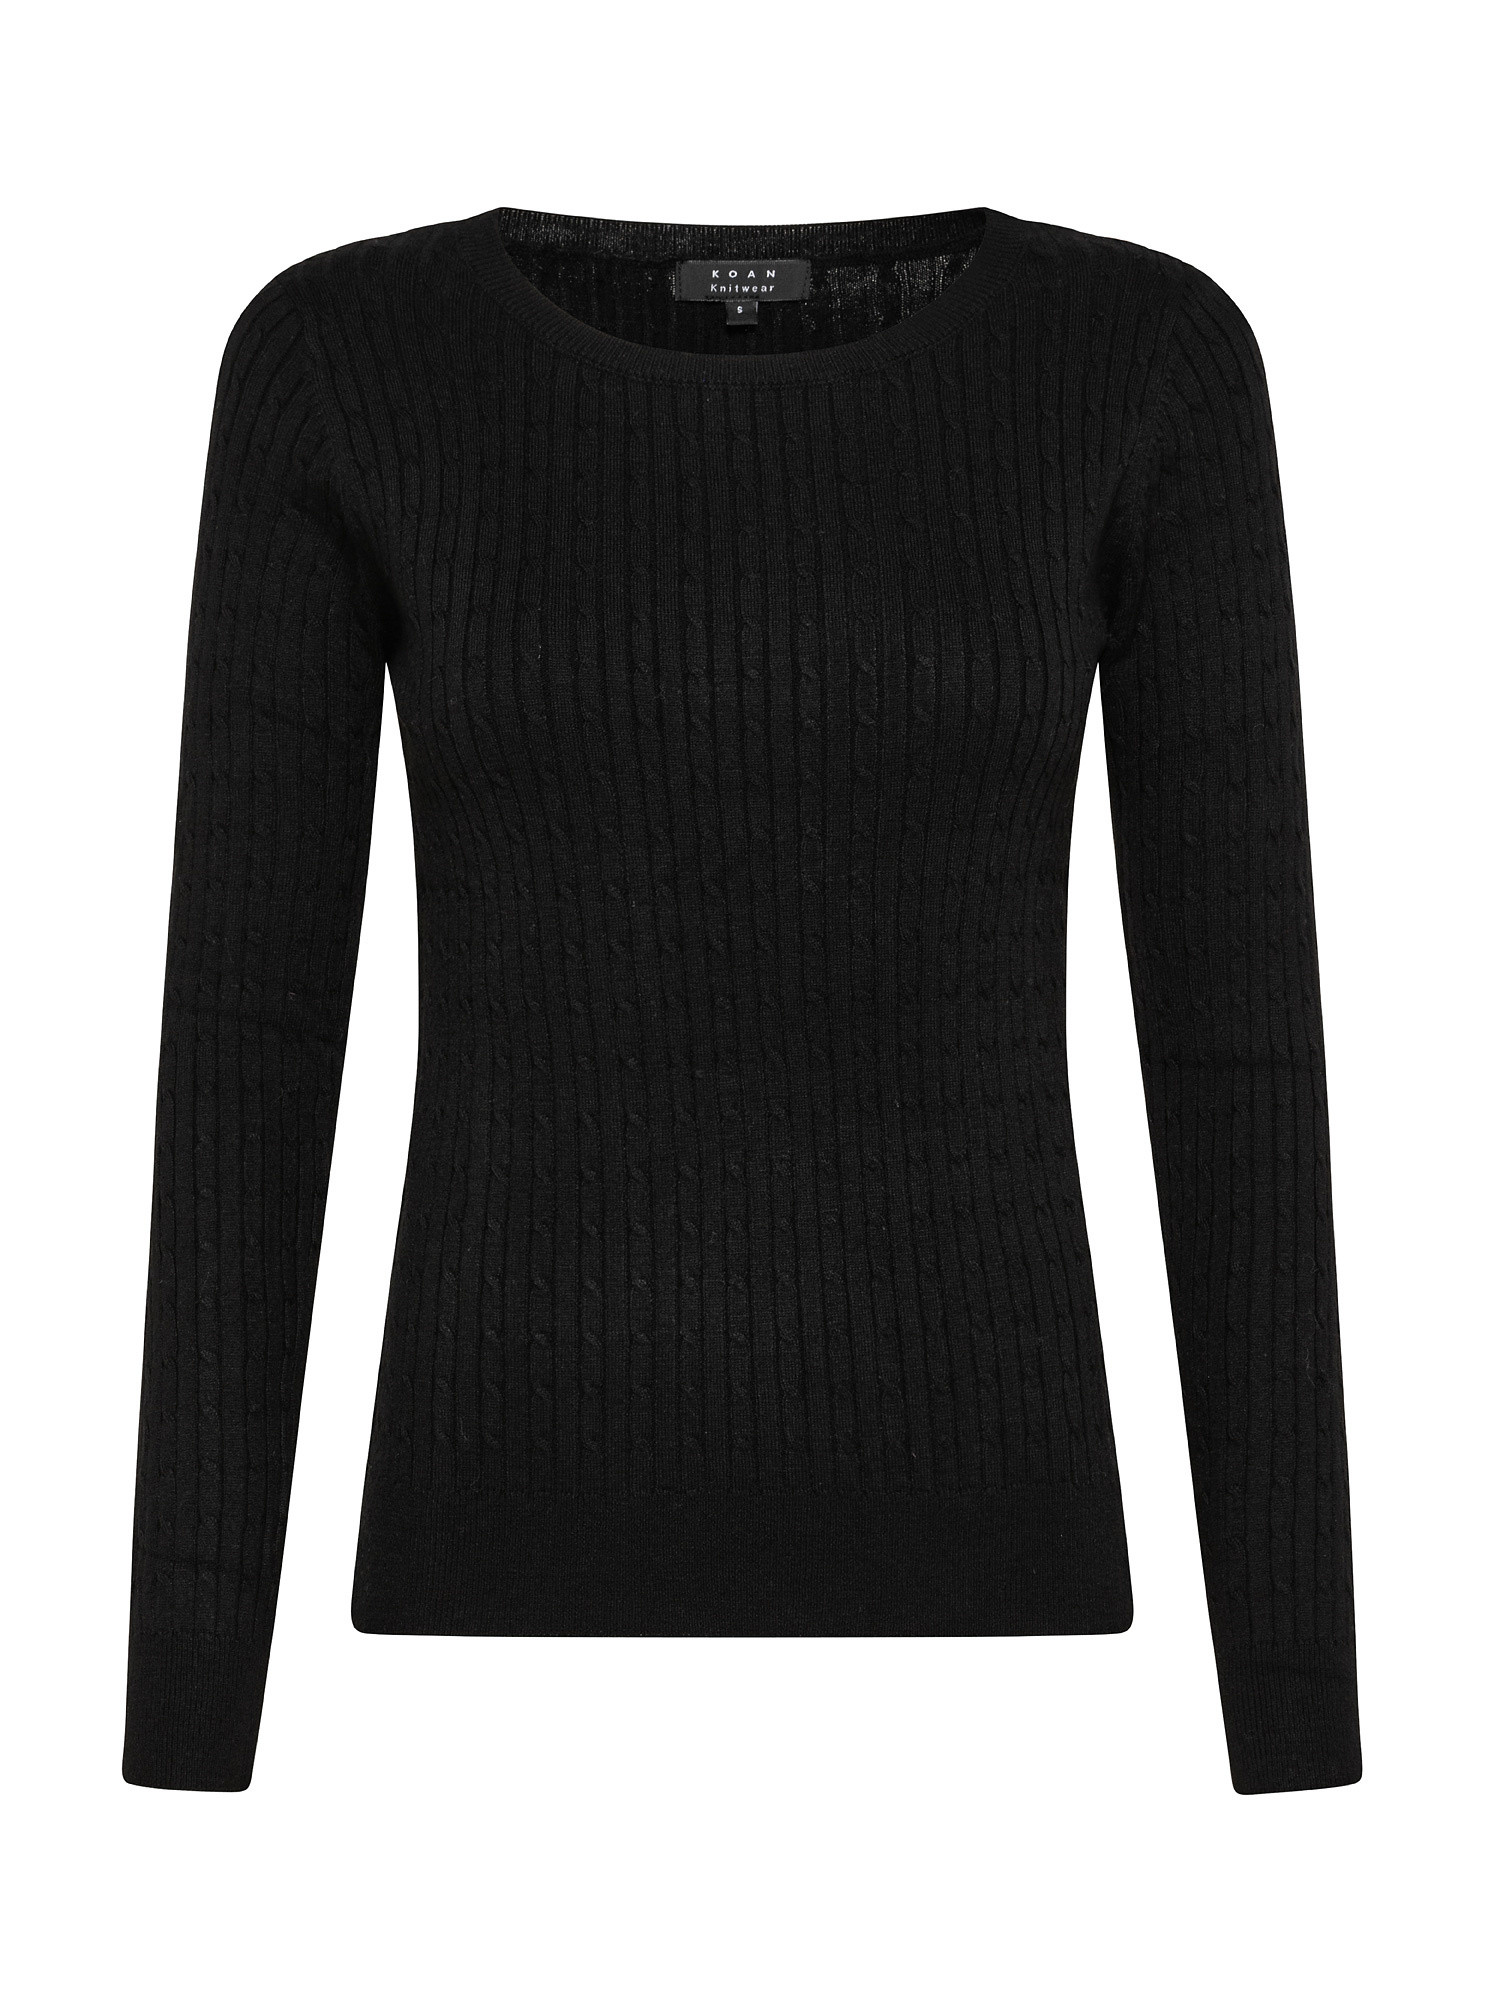 Crewneck knit pullover, Black, large image number 0